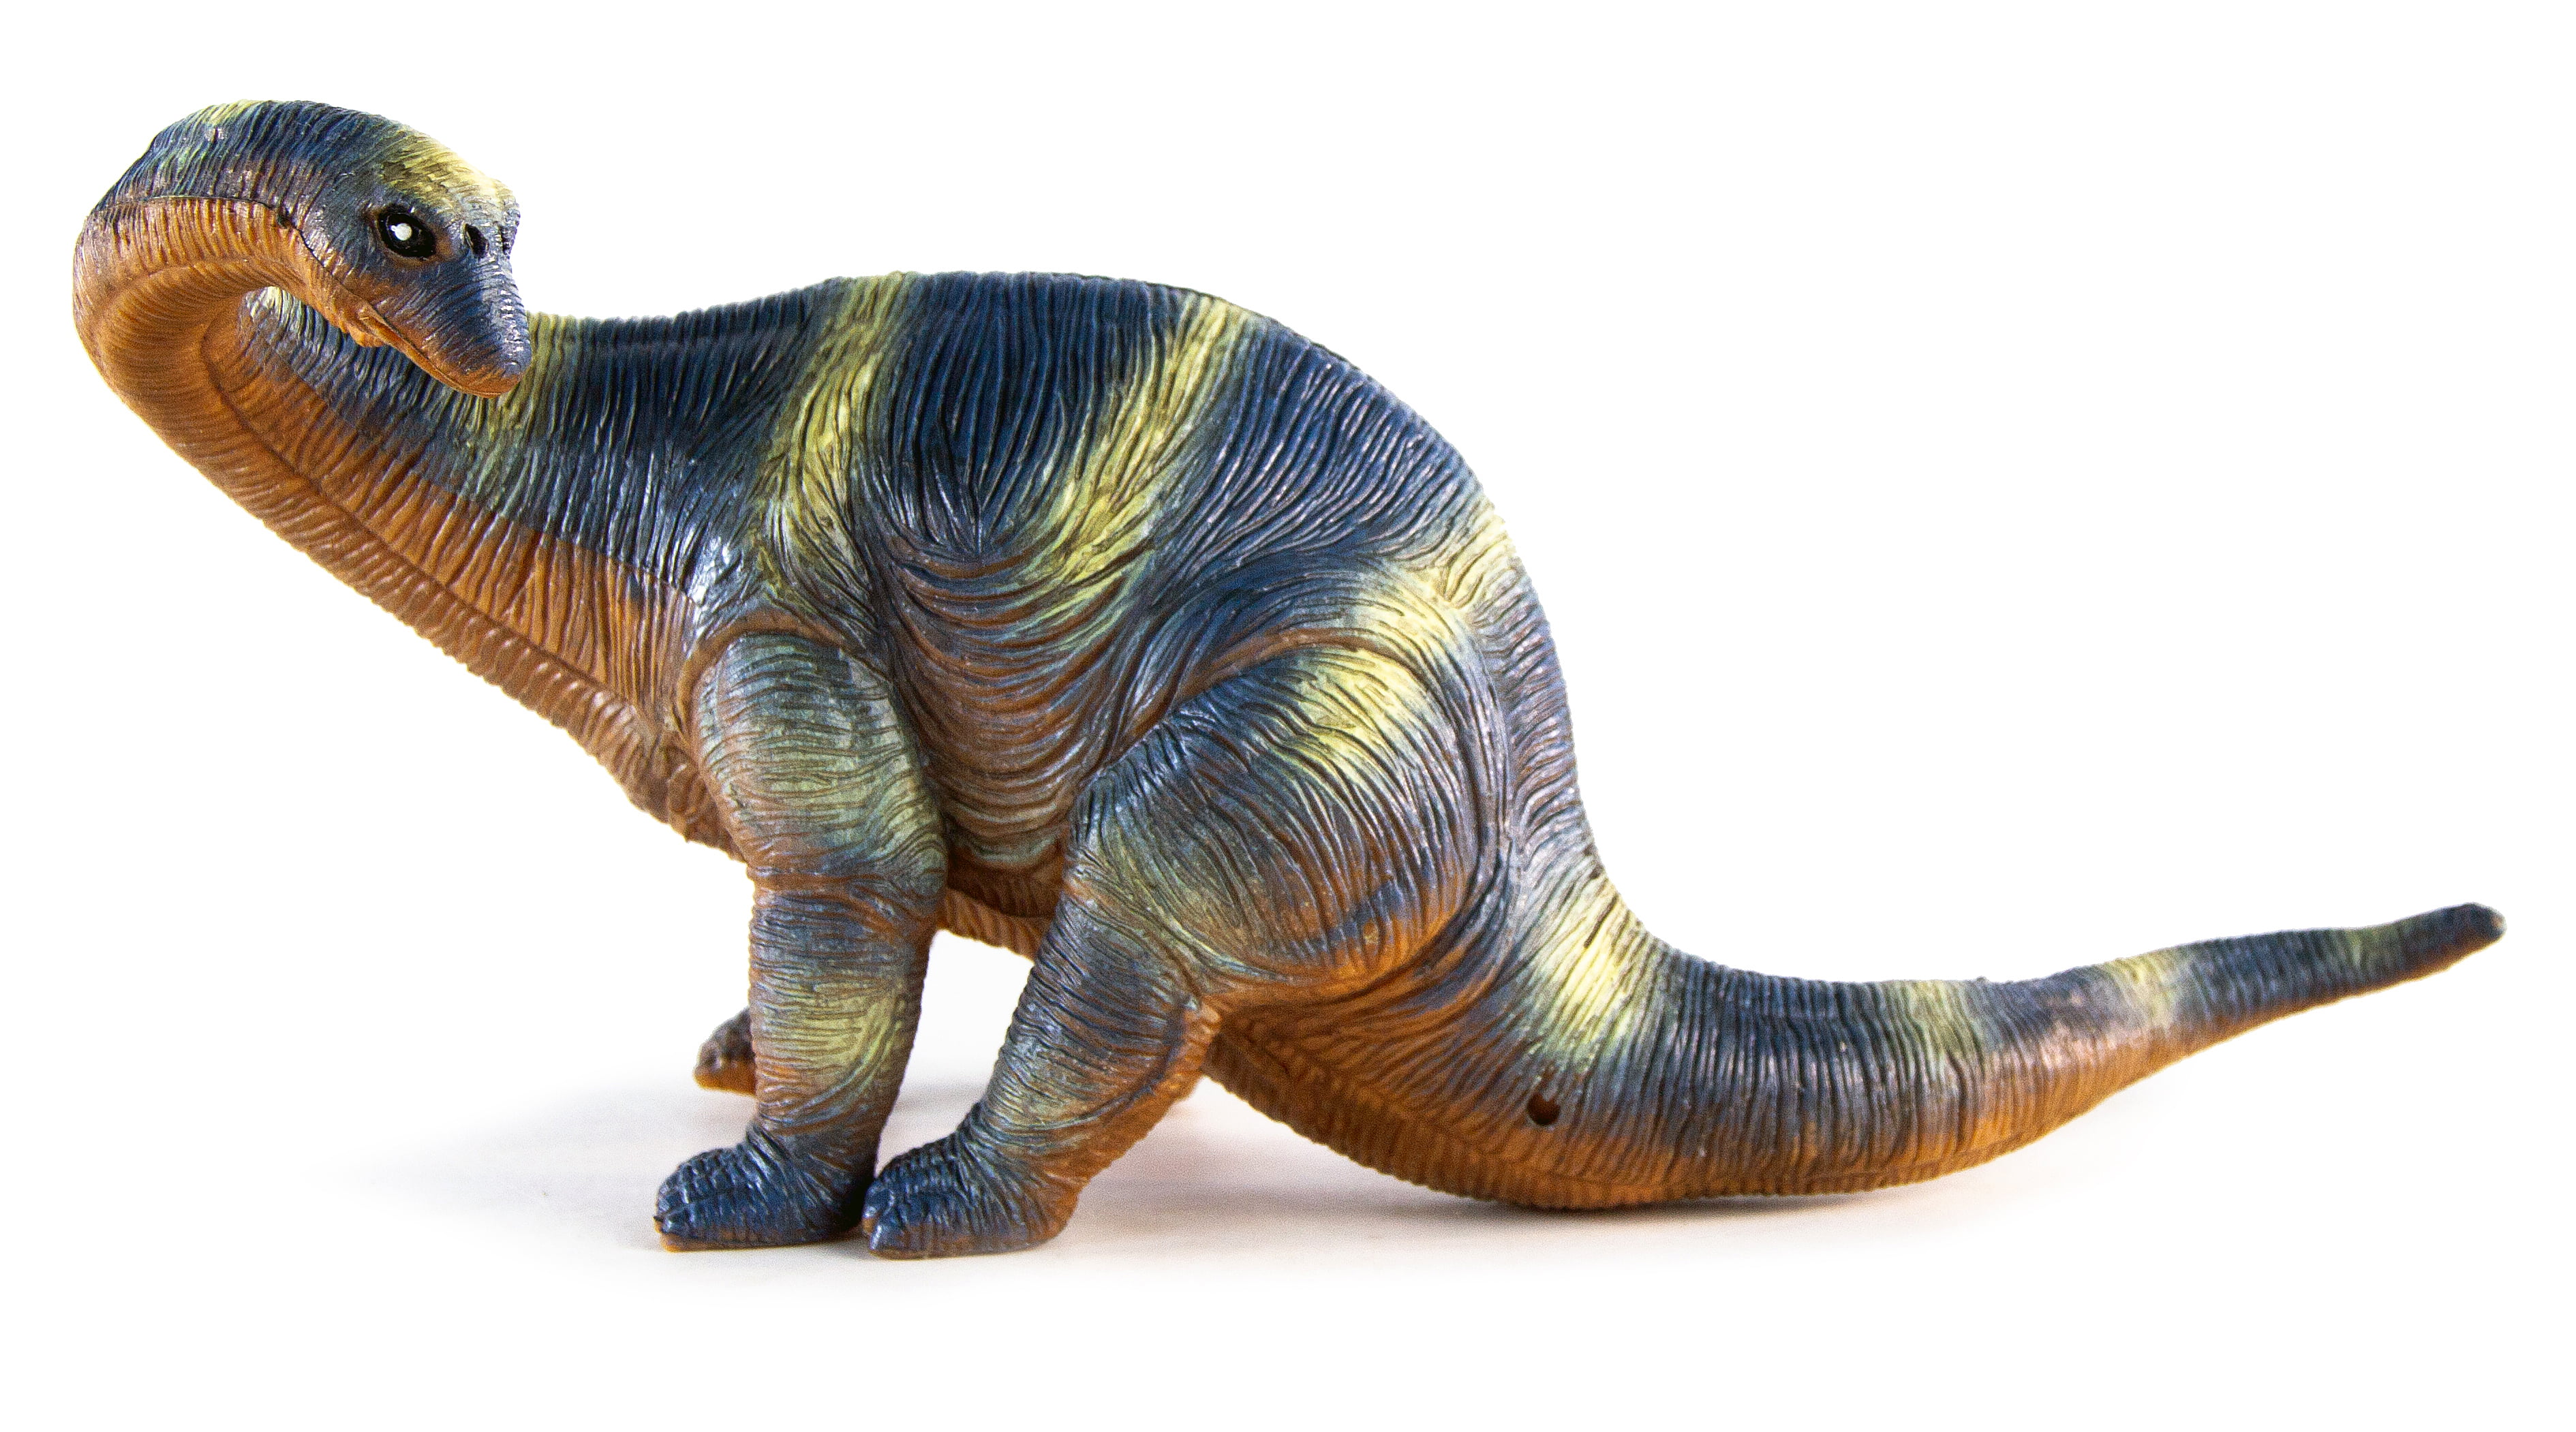 Игрушки фигурки динозавров «Мир юрского периода» 222N 23-28 см. статичные / 6 шт.